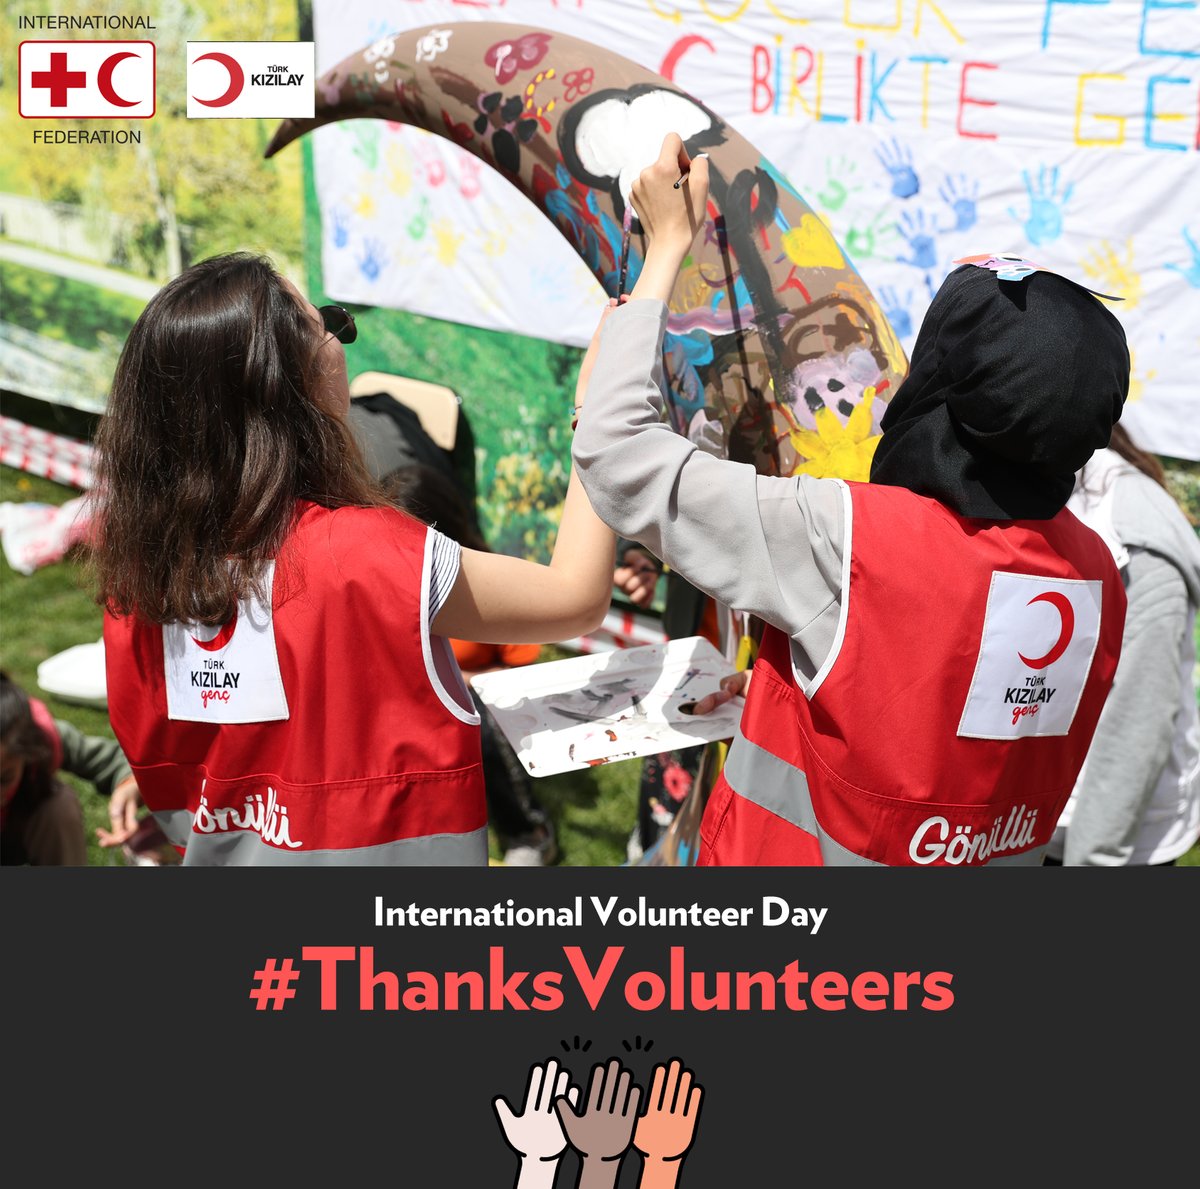 Büyük bir gönüllülük hikayemiz var! Burası tam 151 yıldır gönüllüleriyle iyilik hikayeleri yazan ve yaşatan @Kizilay İnsan ıstırabının dindirilmesi için ailemizin bir ferdi olmanız mutluluk verici. #ThanksVolunteers